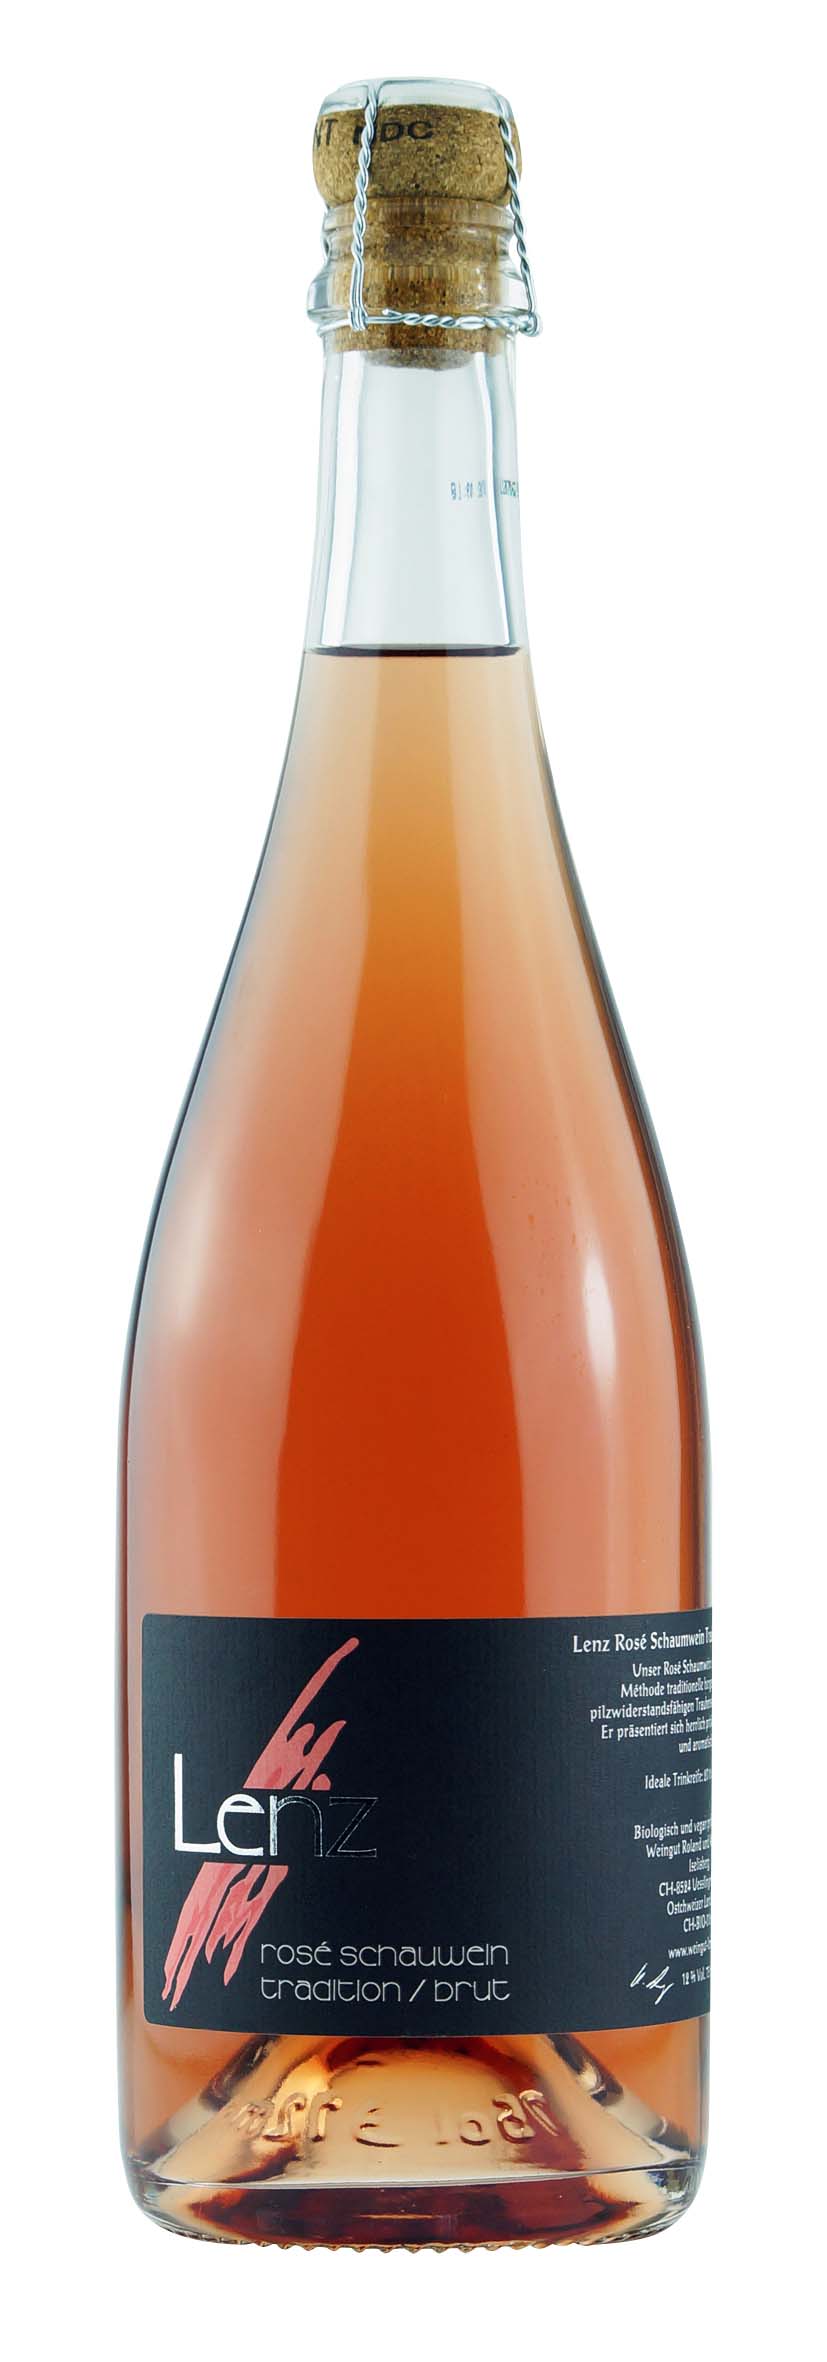 Rosé Schaumwein Tradition brut 2015